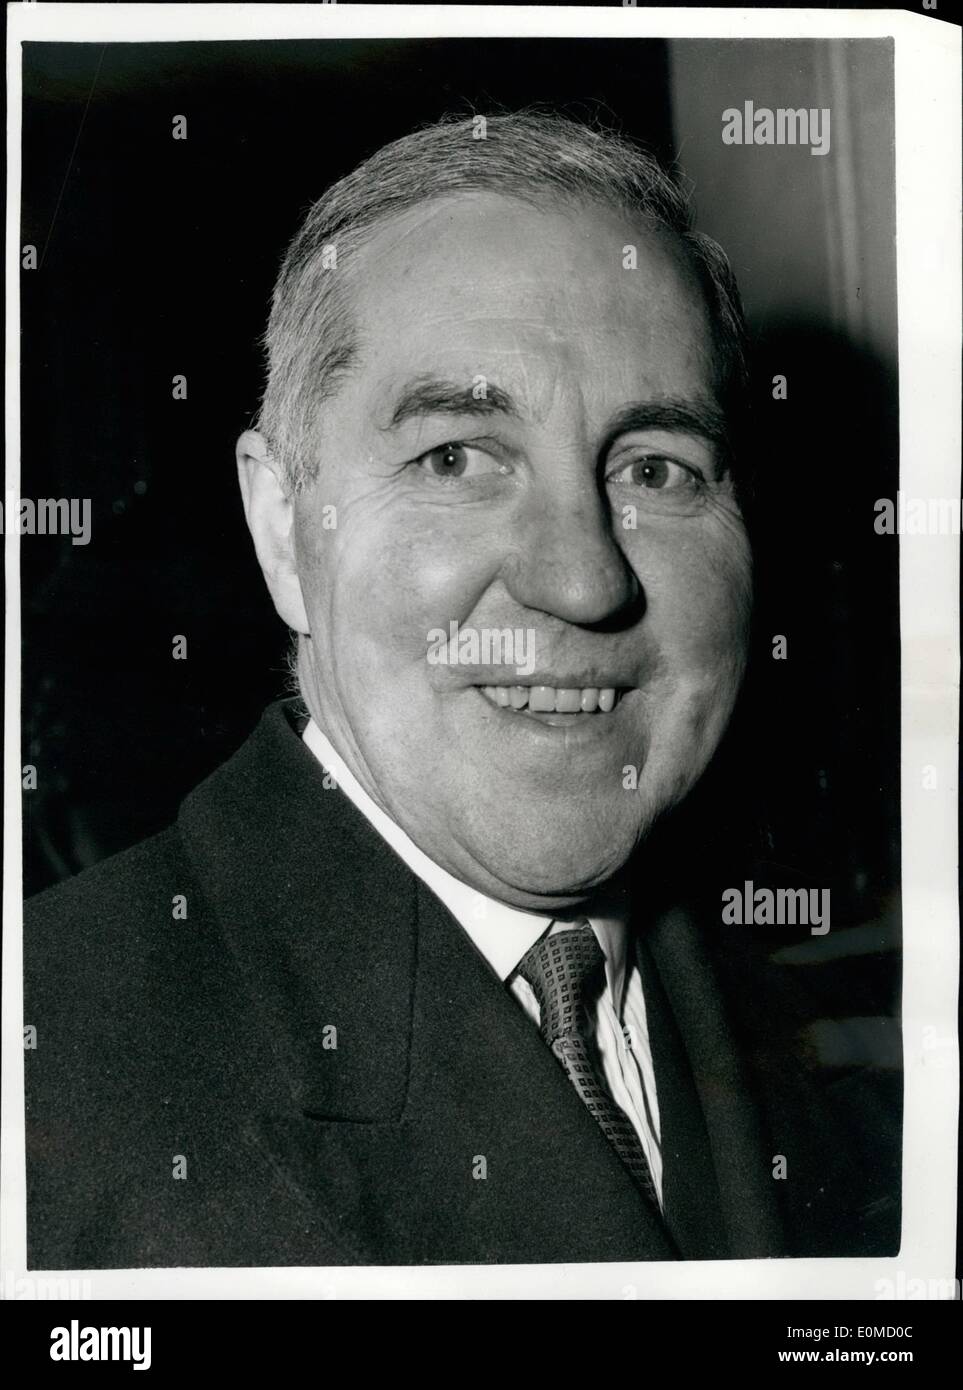 10 octobre 1954 - Accord signé : photo montre M. Henry Brooke, la nouvelle ministre du logement et de l'administration locale vu quitter no 11, Downing Street, cet après-midi. Banque D'Images